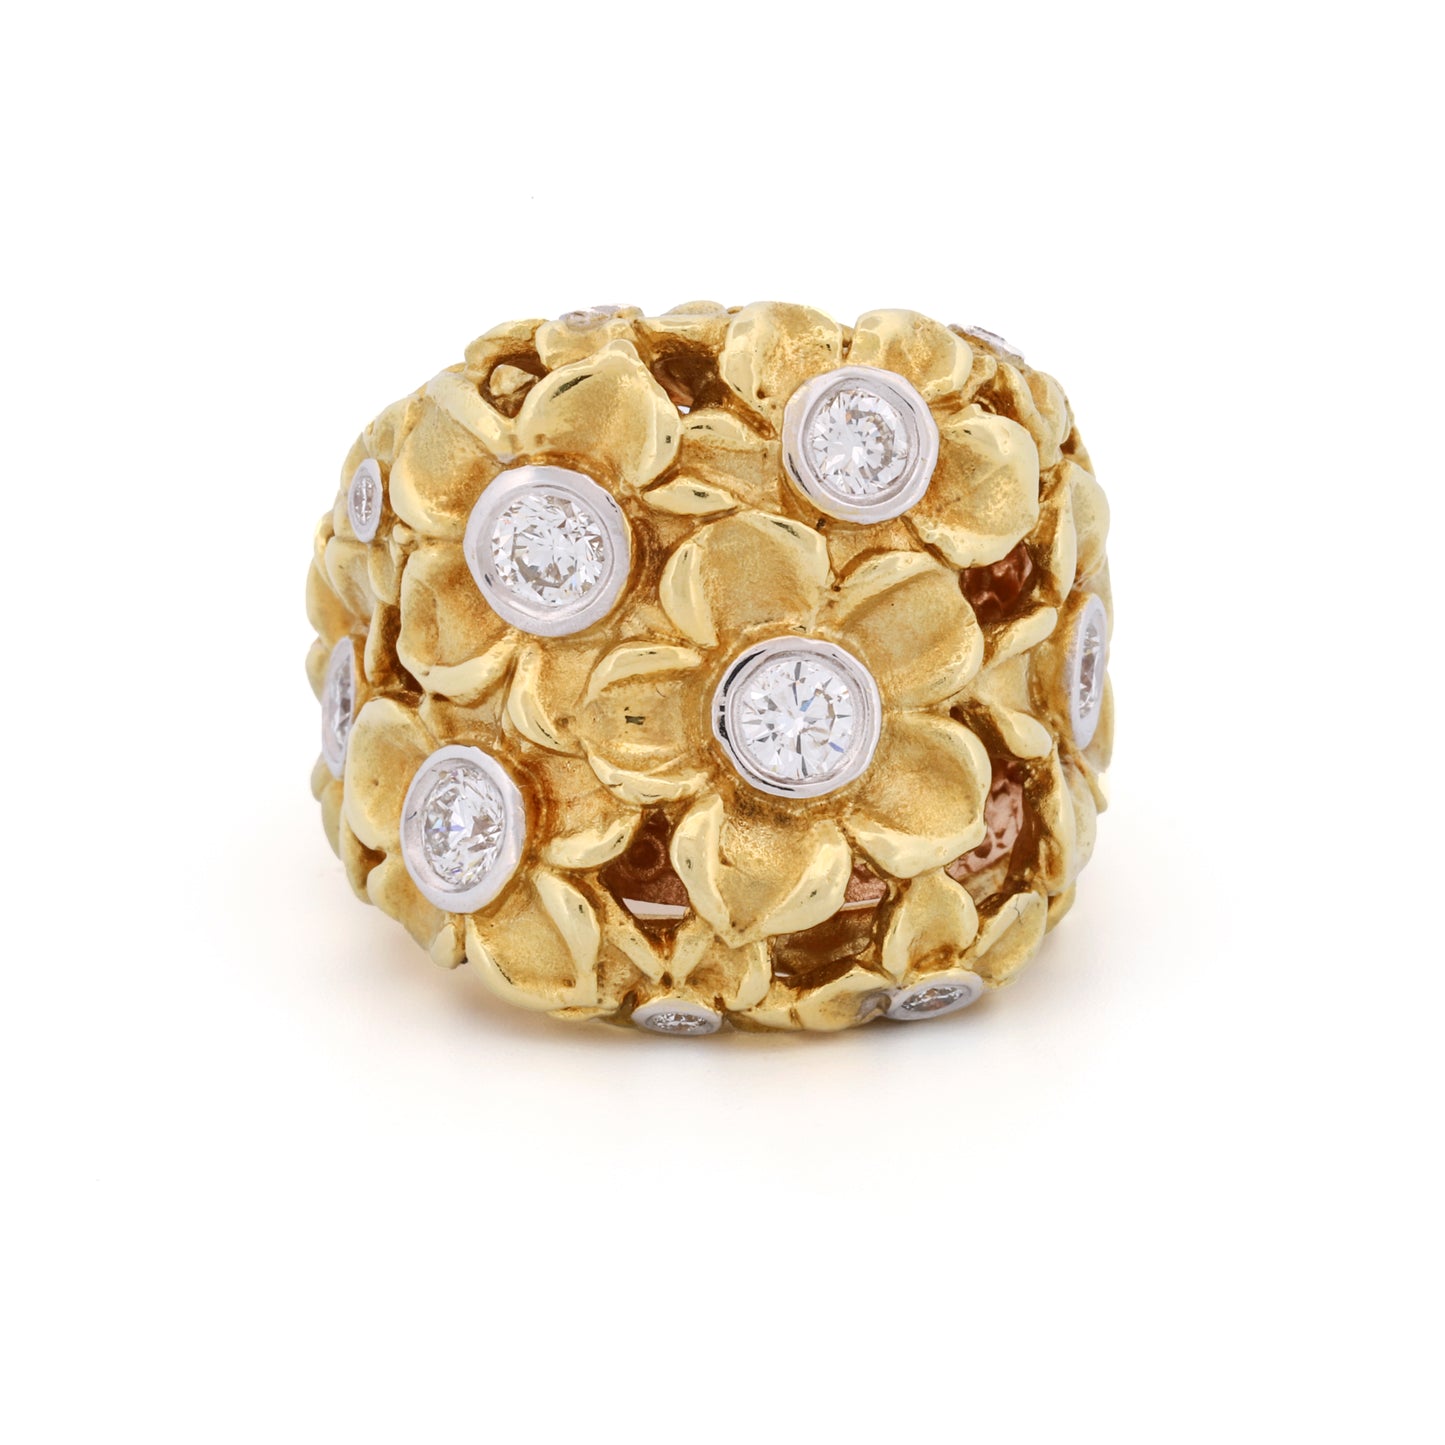 Stambolian Diamond Flowers Statement Ring in 18k Yellow Gold